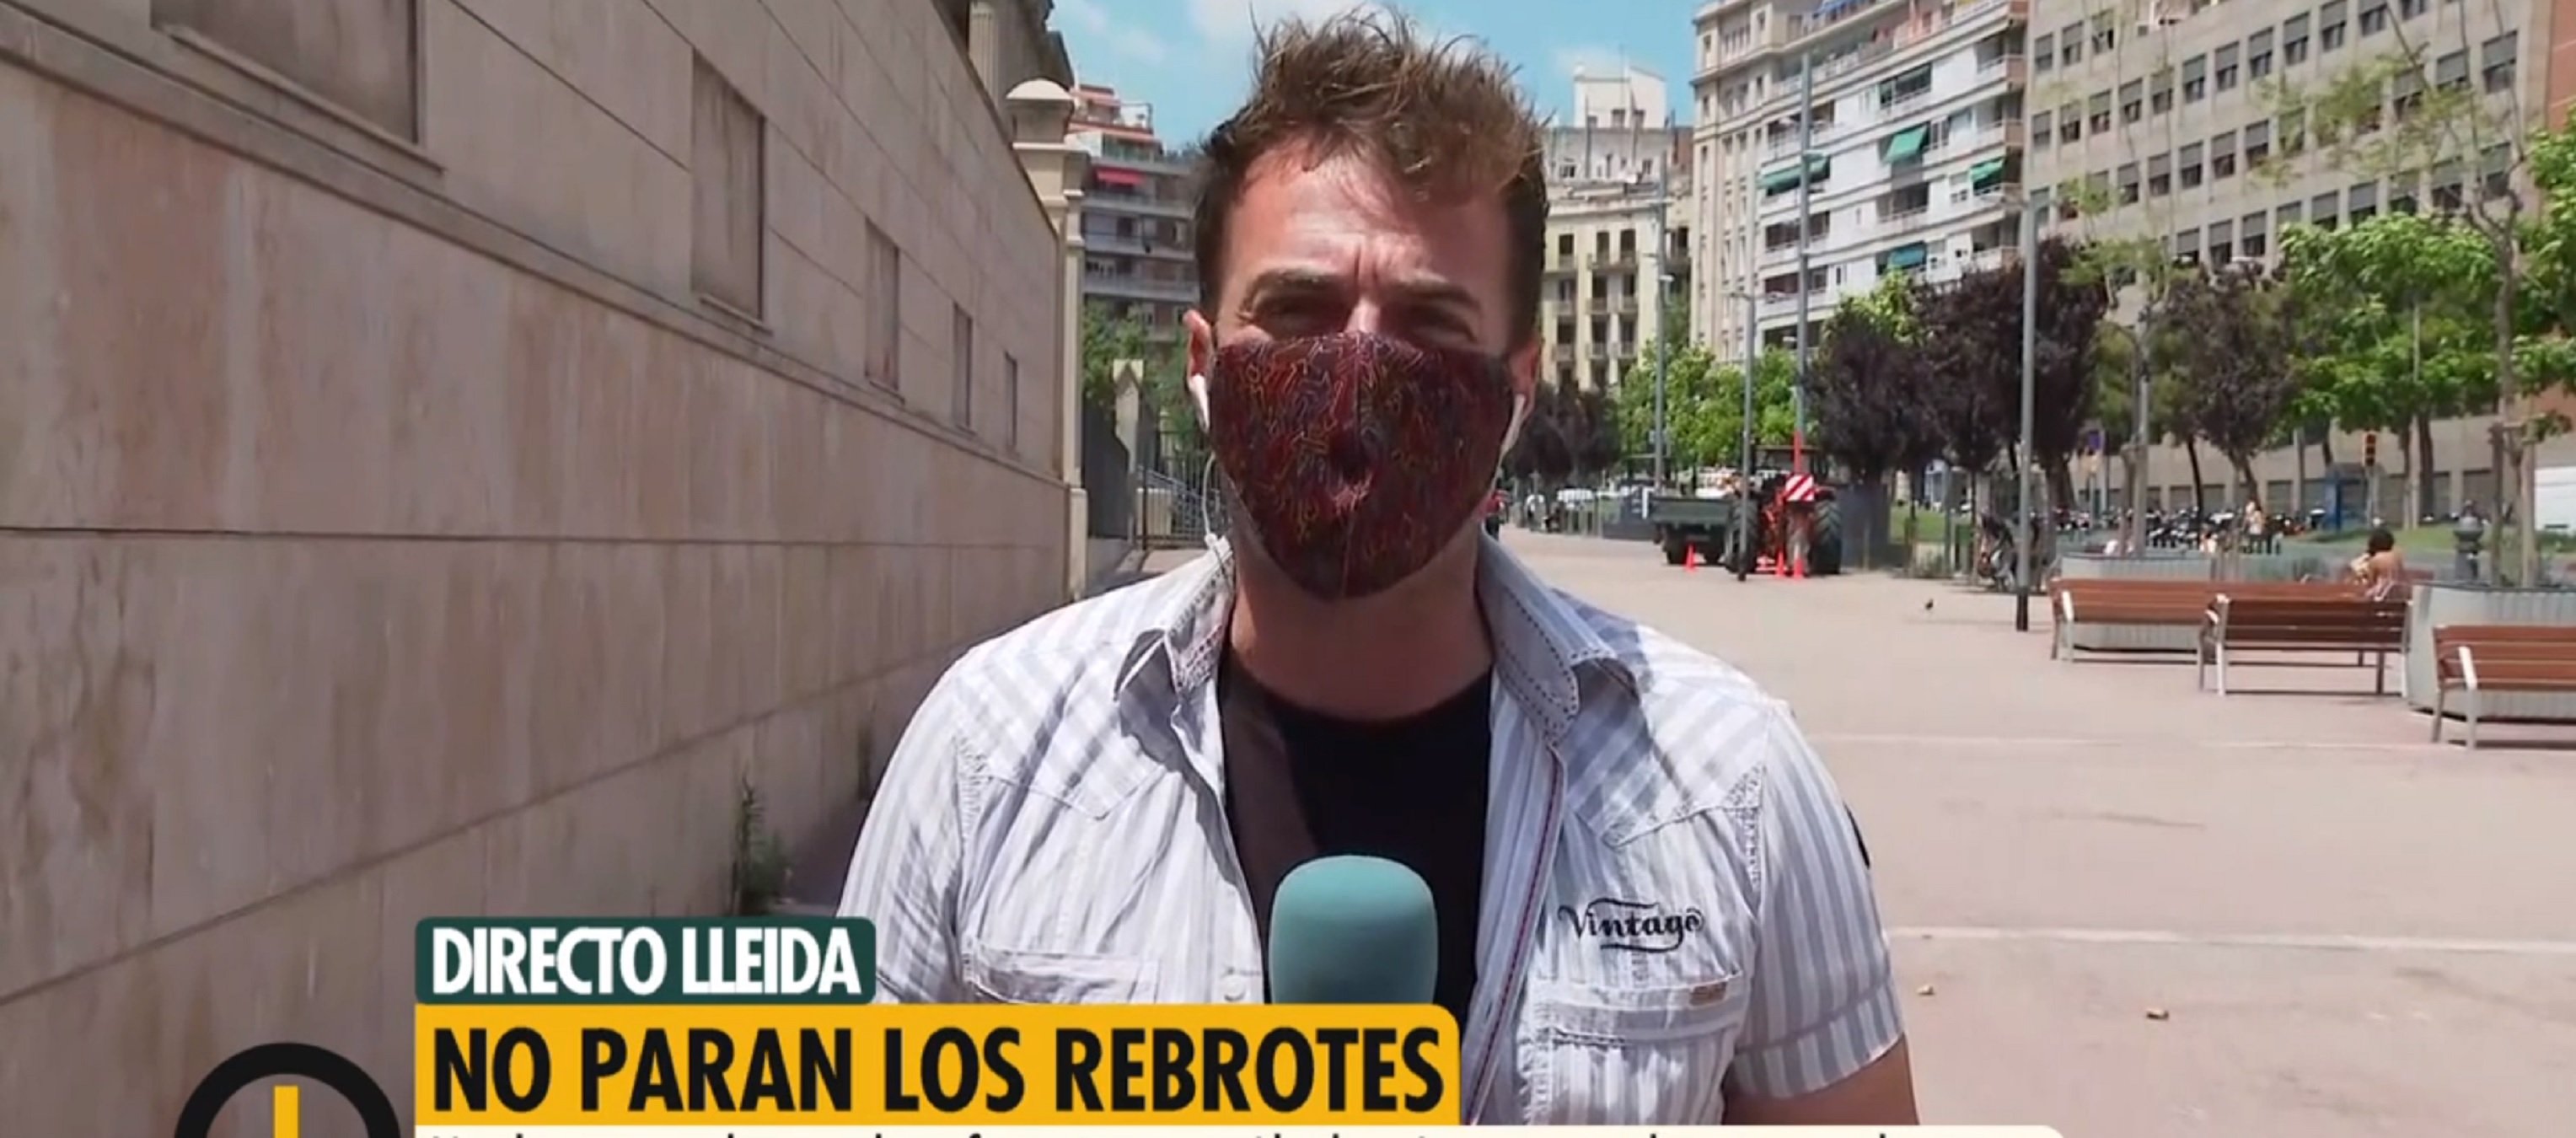 Así manipula Telecinco: "Directo Lleida" y esconden que están en Barcelona